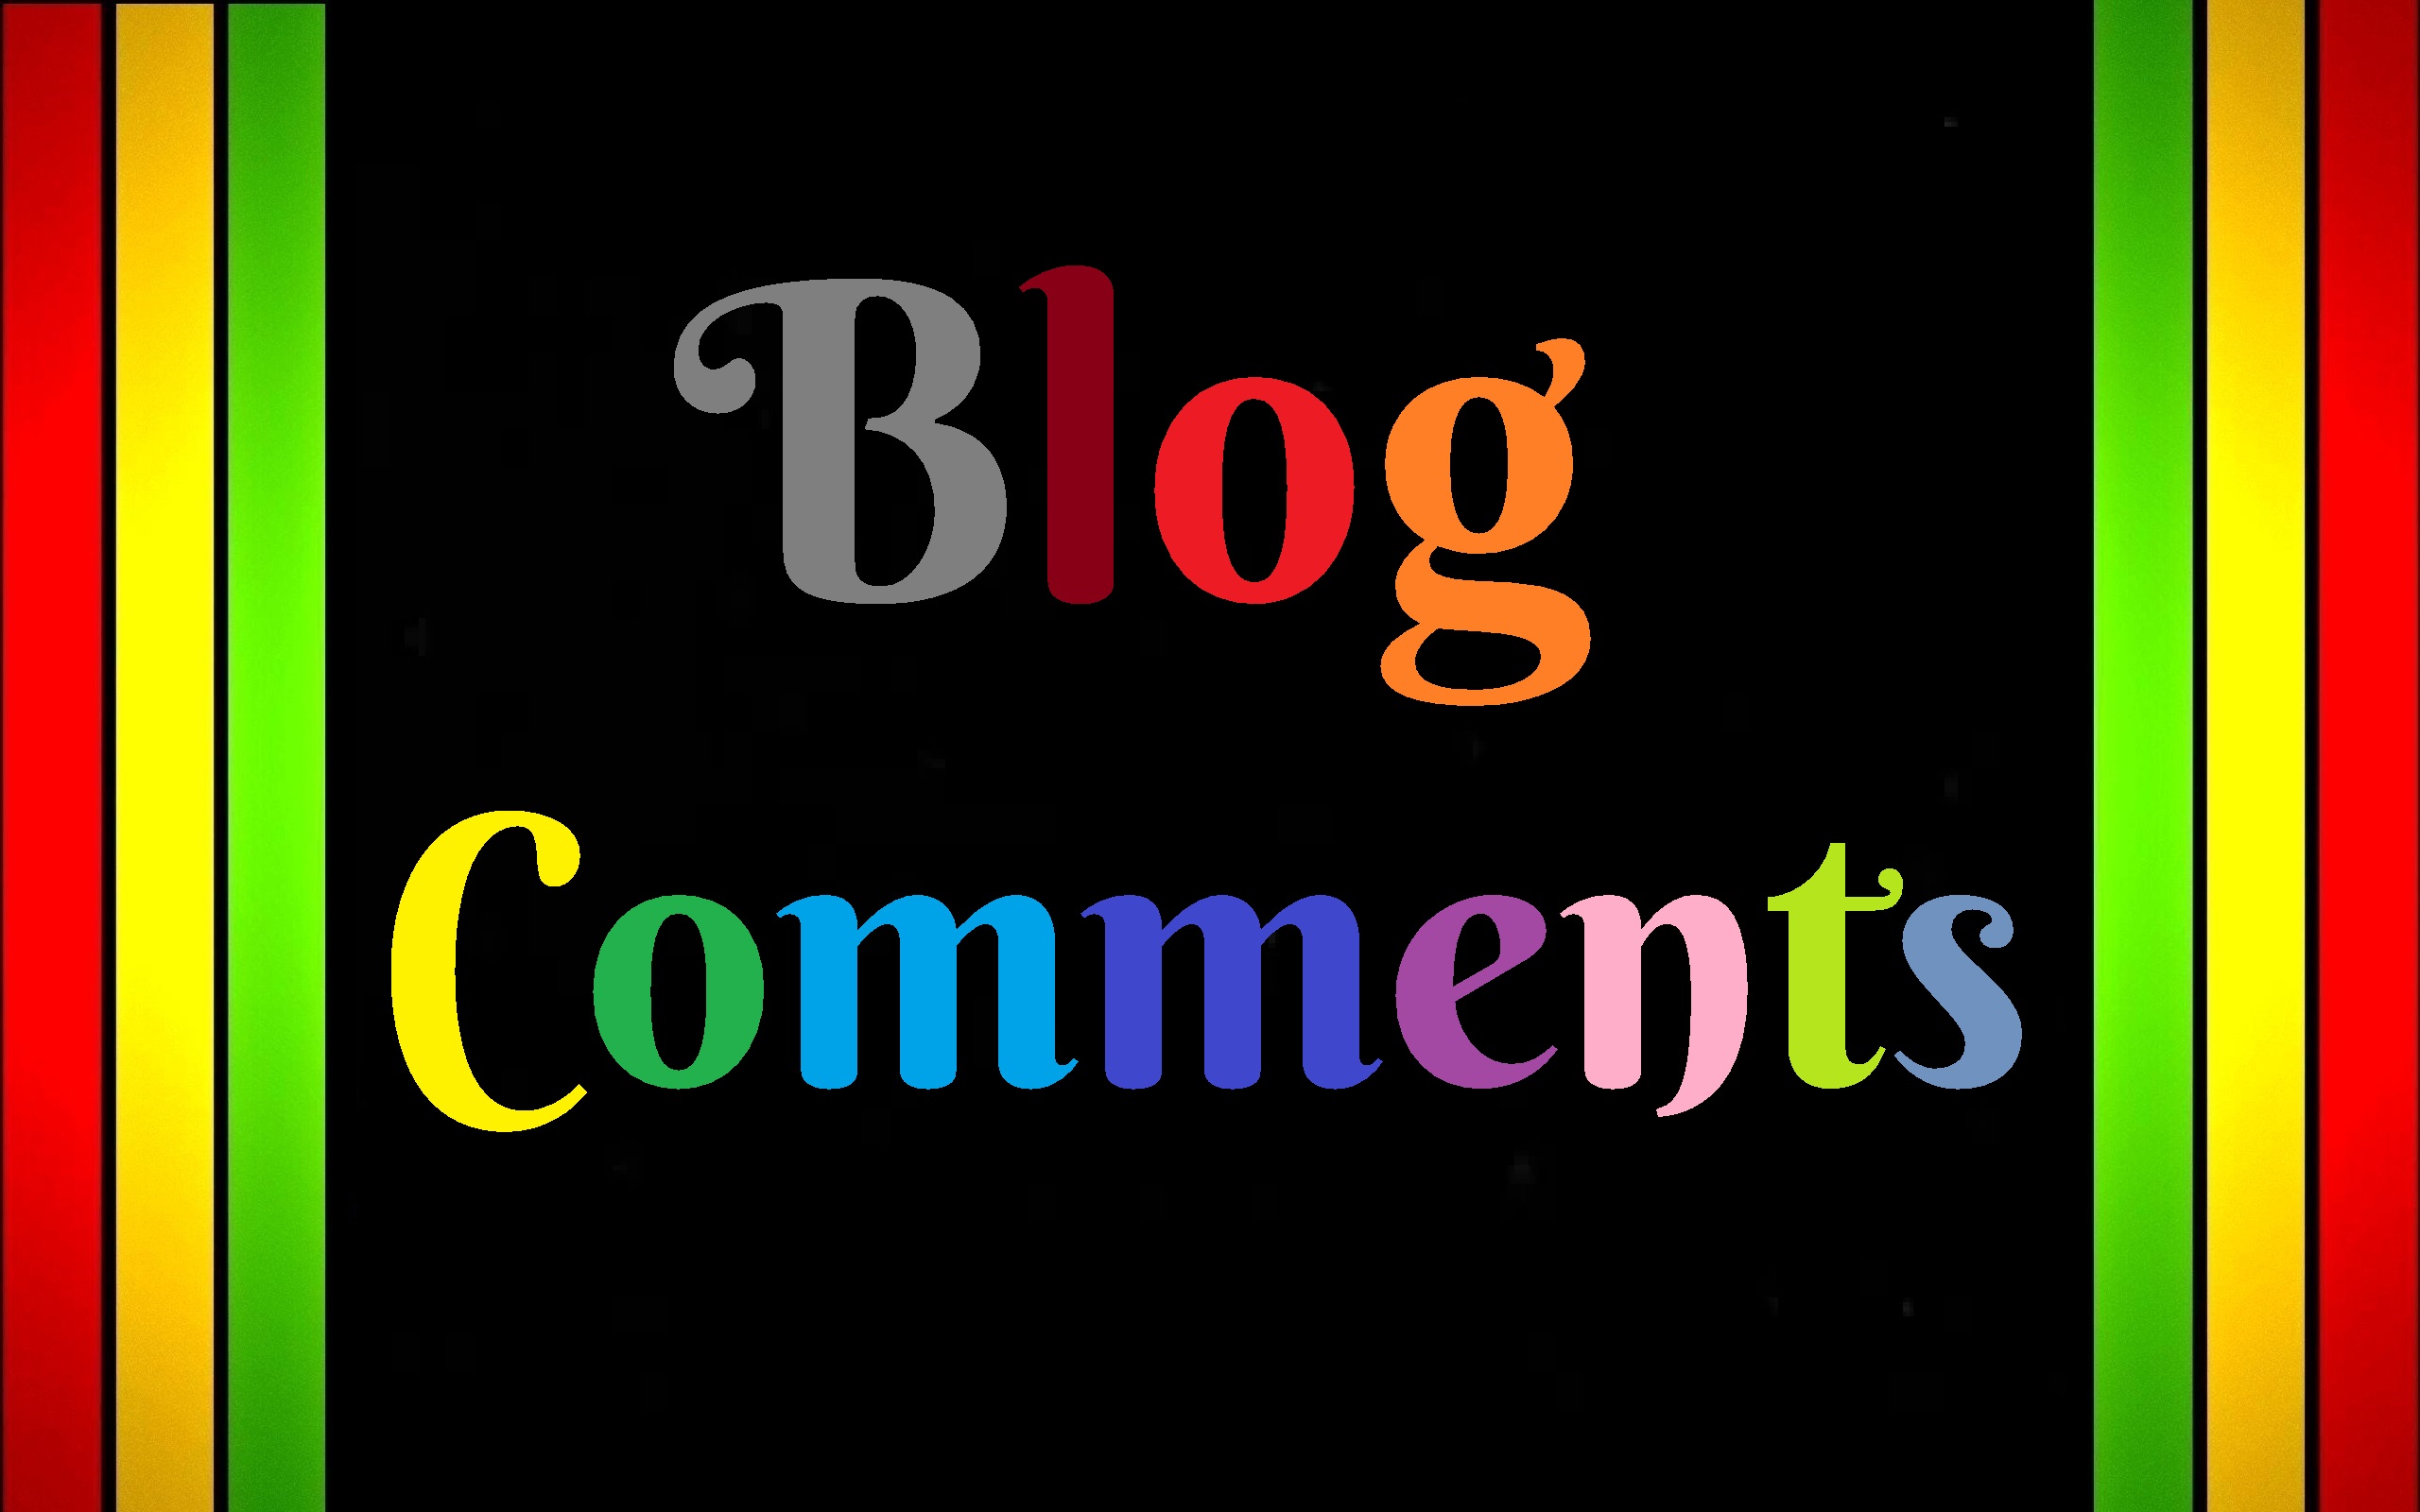 5000 GSA Blog Comment Backlinks for Buffer website